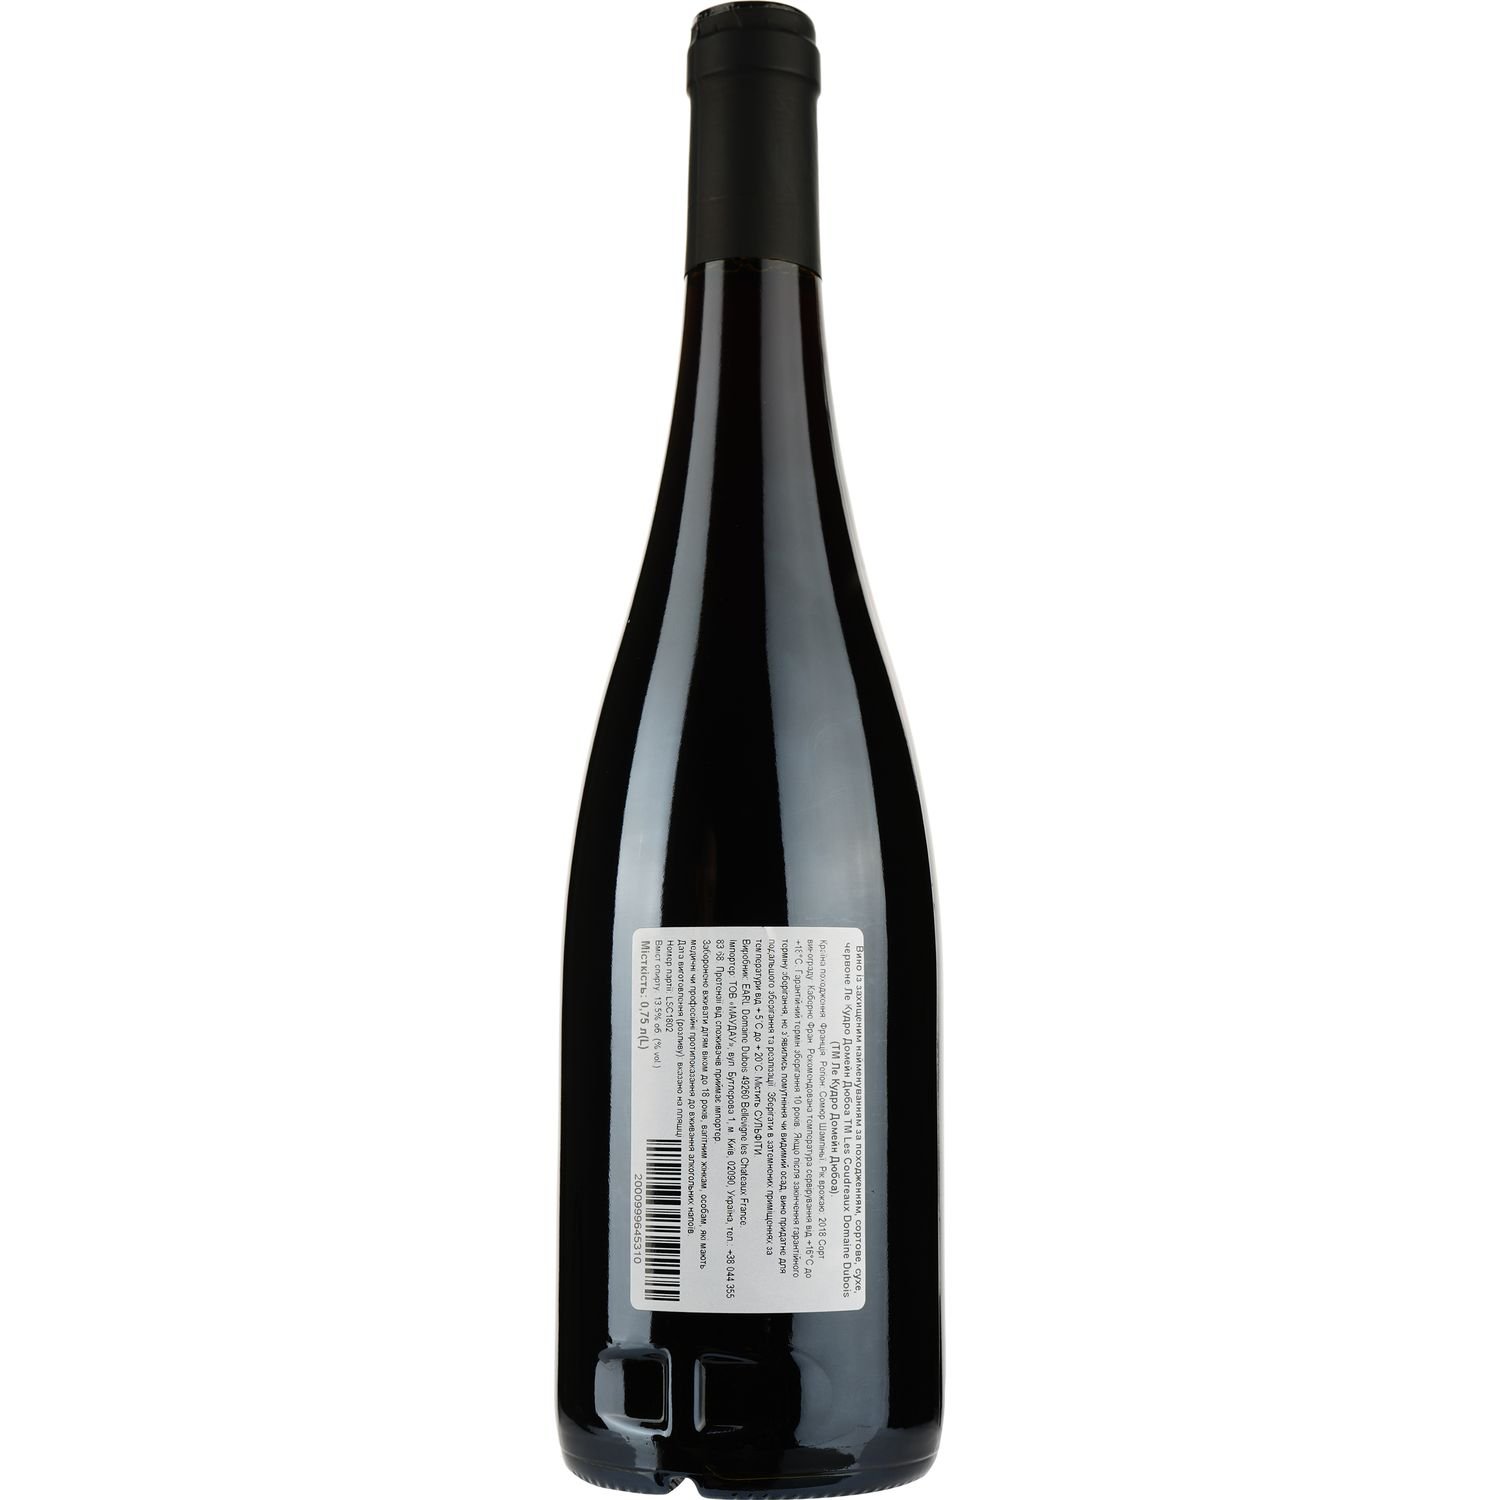 Вино Les Coudreaux Domaine Dubois AOP Saumur Champigny 2018, красное, сухое, 0,75 л - фото 2